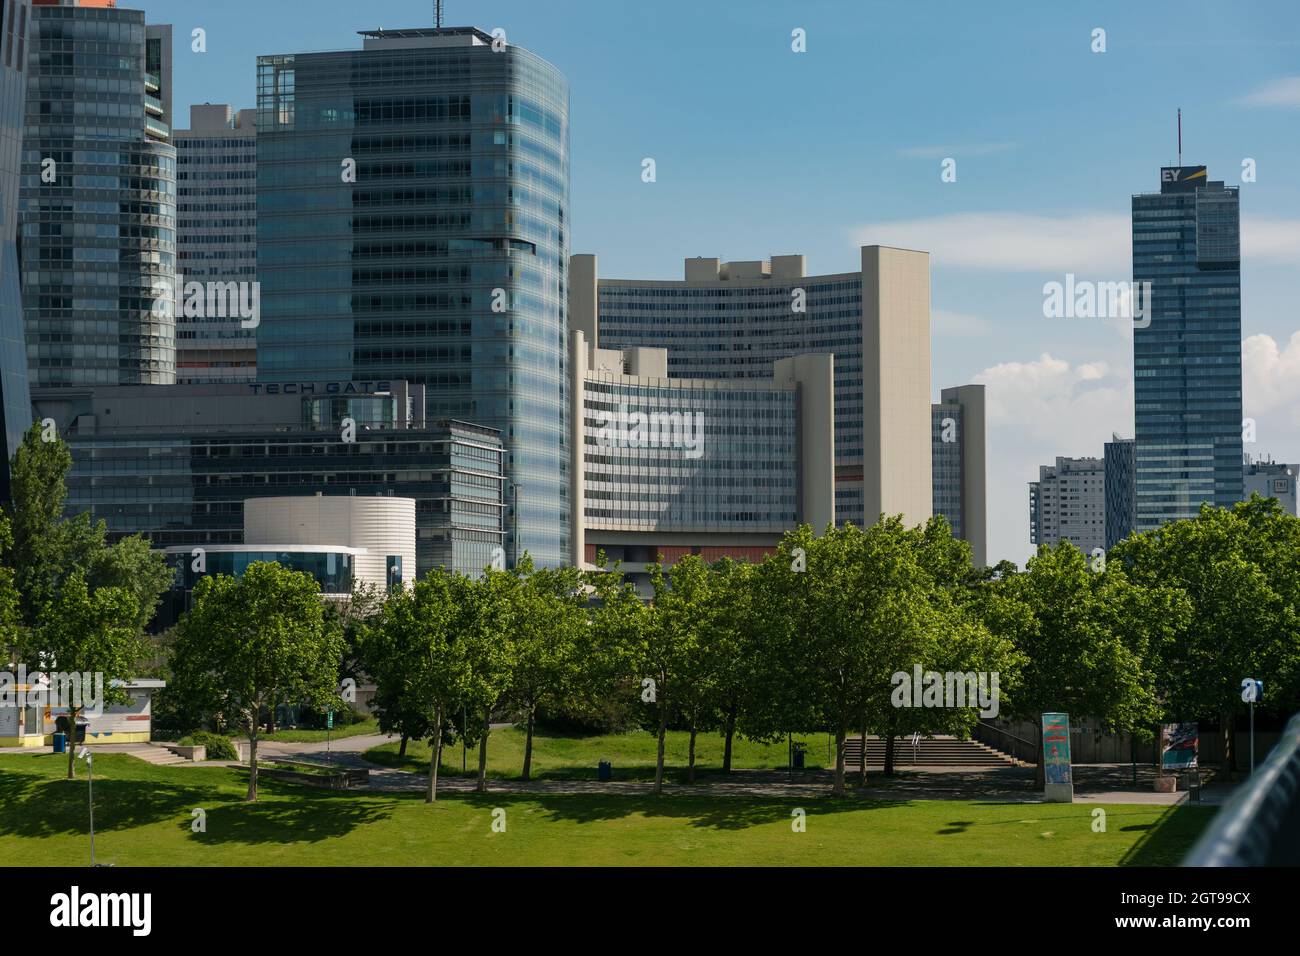 01 Juni 2019 Wien, Österreich - Donaucity Wien. Das Vienna International Center ist ein Komplex mit Wolkenkratzern, einem großen Geschäftszentrum an der Donau Stockfoto